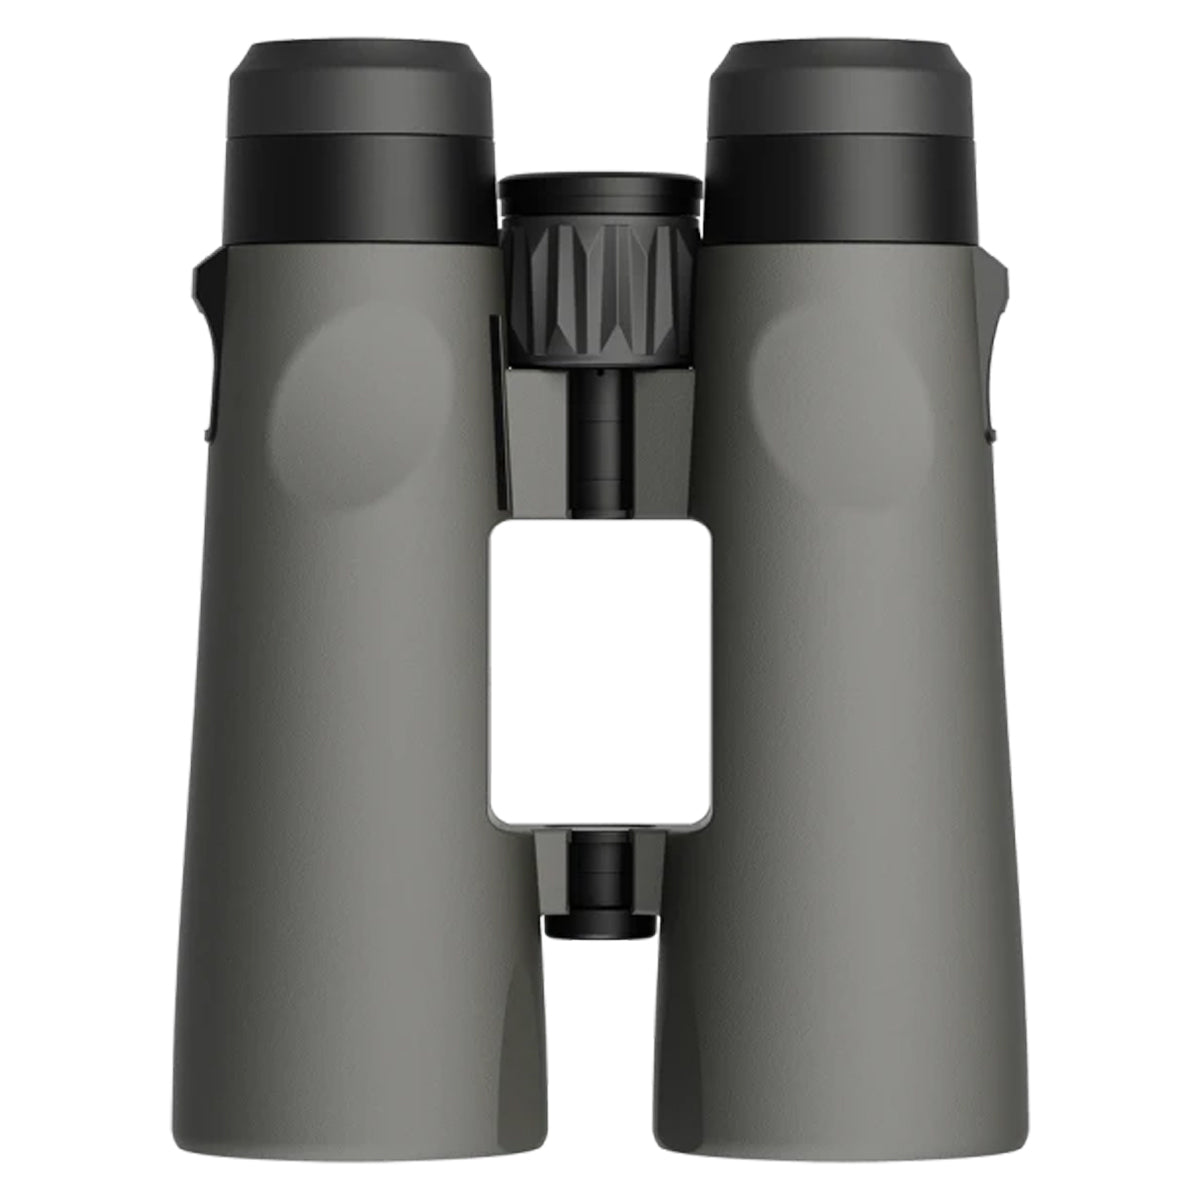 Leupold BX-4 Pro Guide HD 12x50mm Gen 2 Binocular (184763)